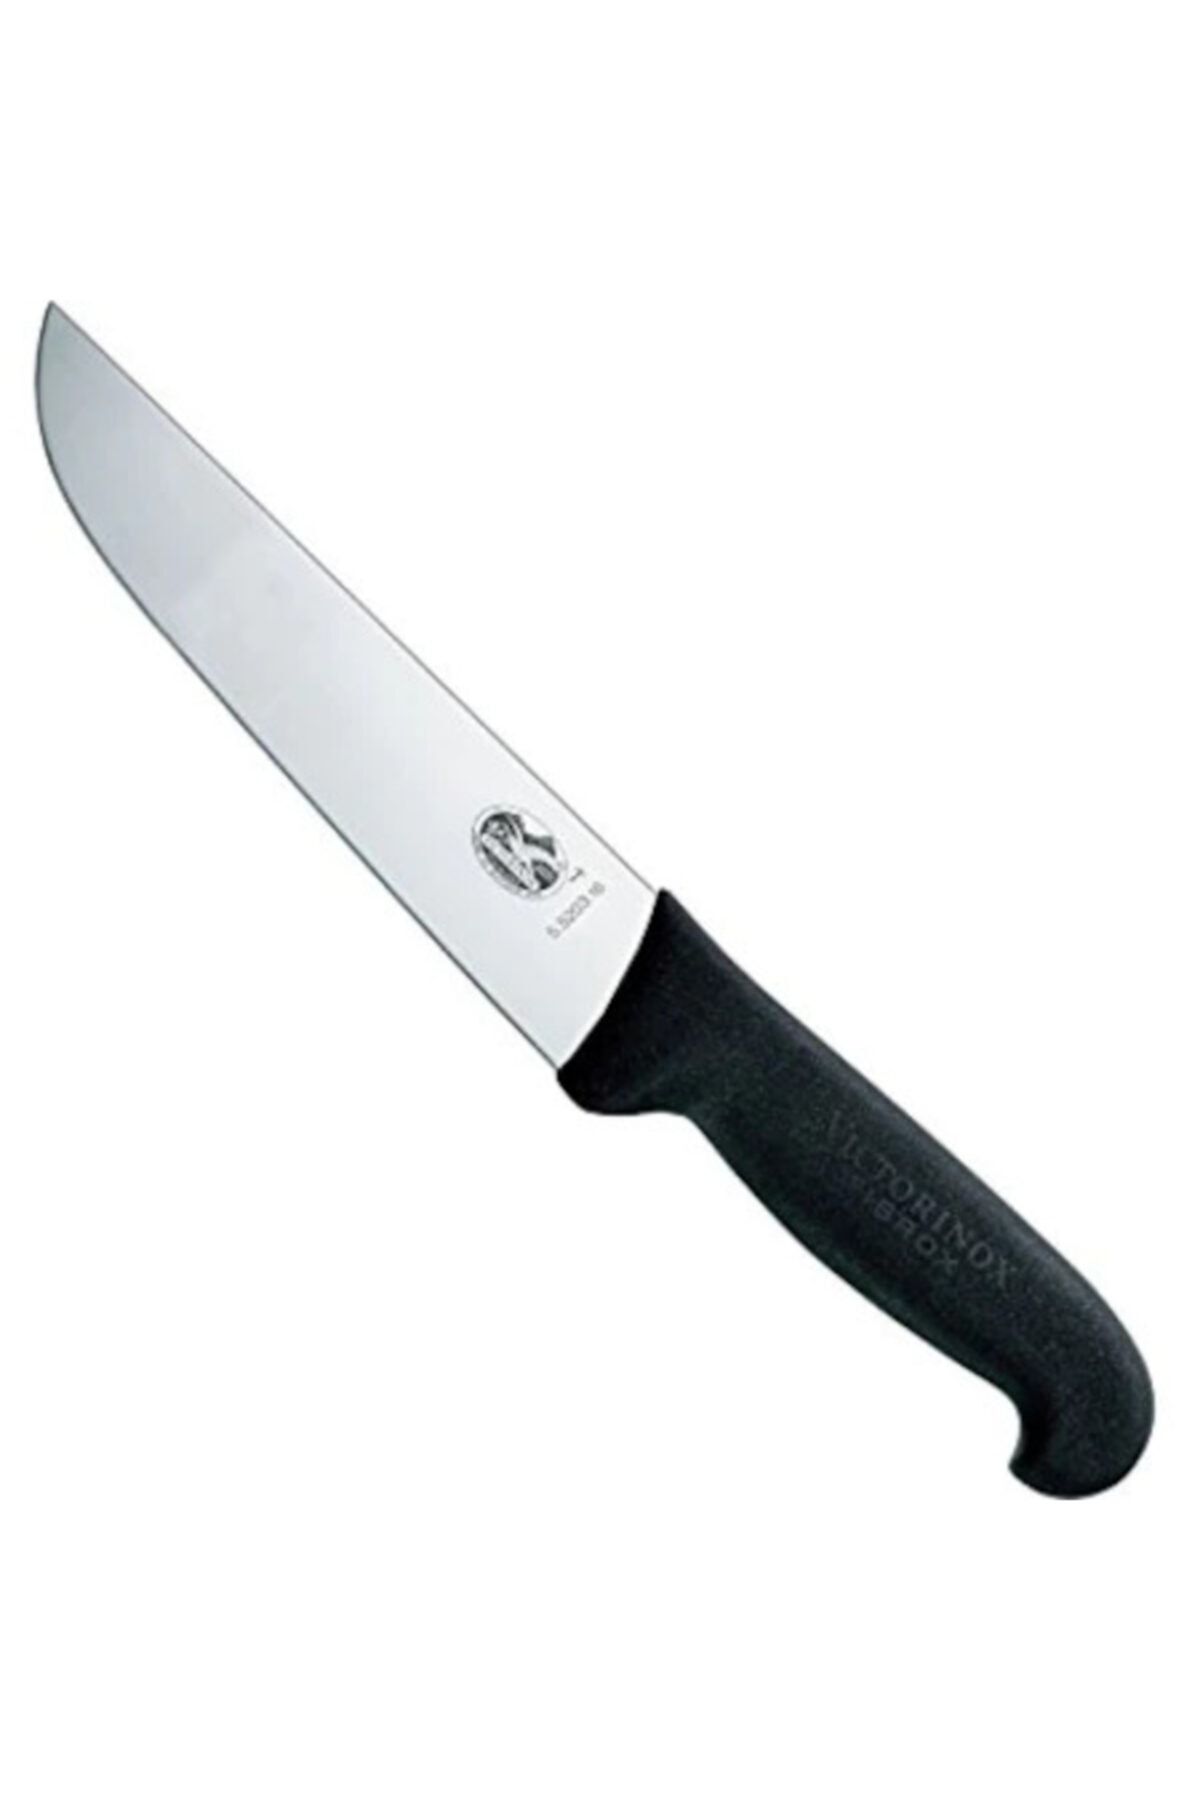 VICTORINOX 16 Cm Mutfak Bıçağı 5.5203.16 vict520316